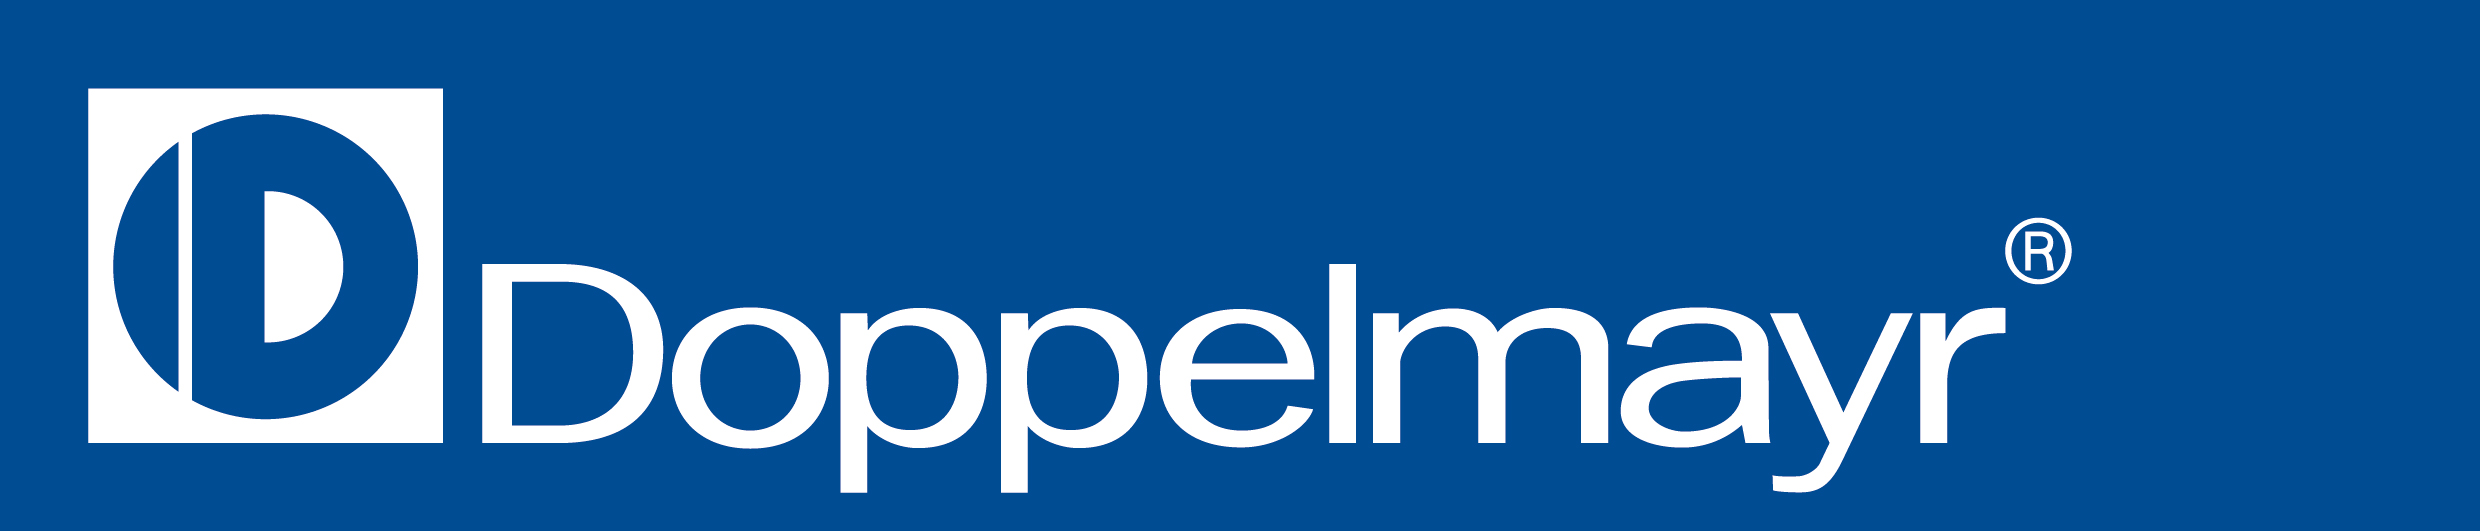 Doppelmayr Logo